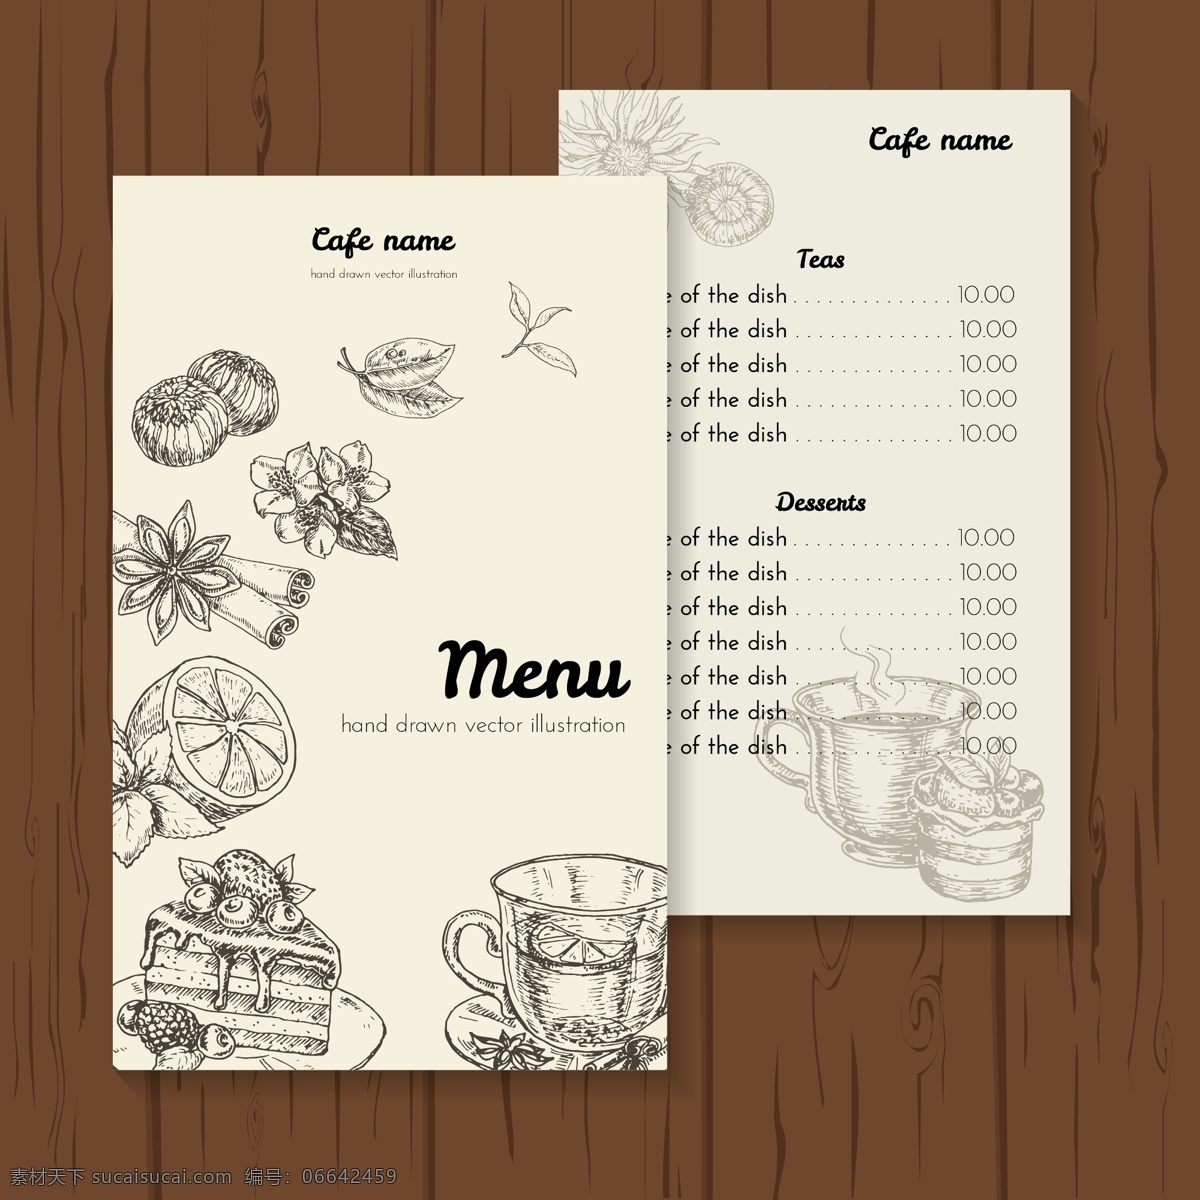 手绘 茶 餐厅 菜单 创意 菜餐厅 psd素材 矢量 高清图片